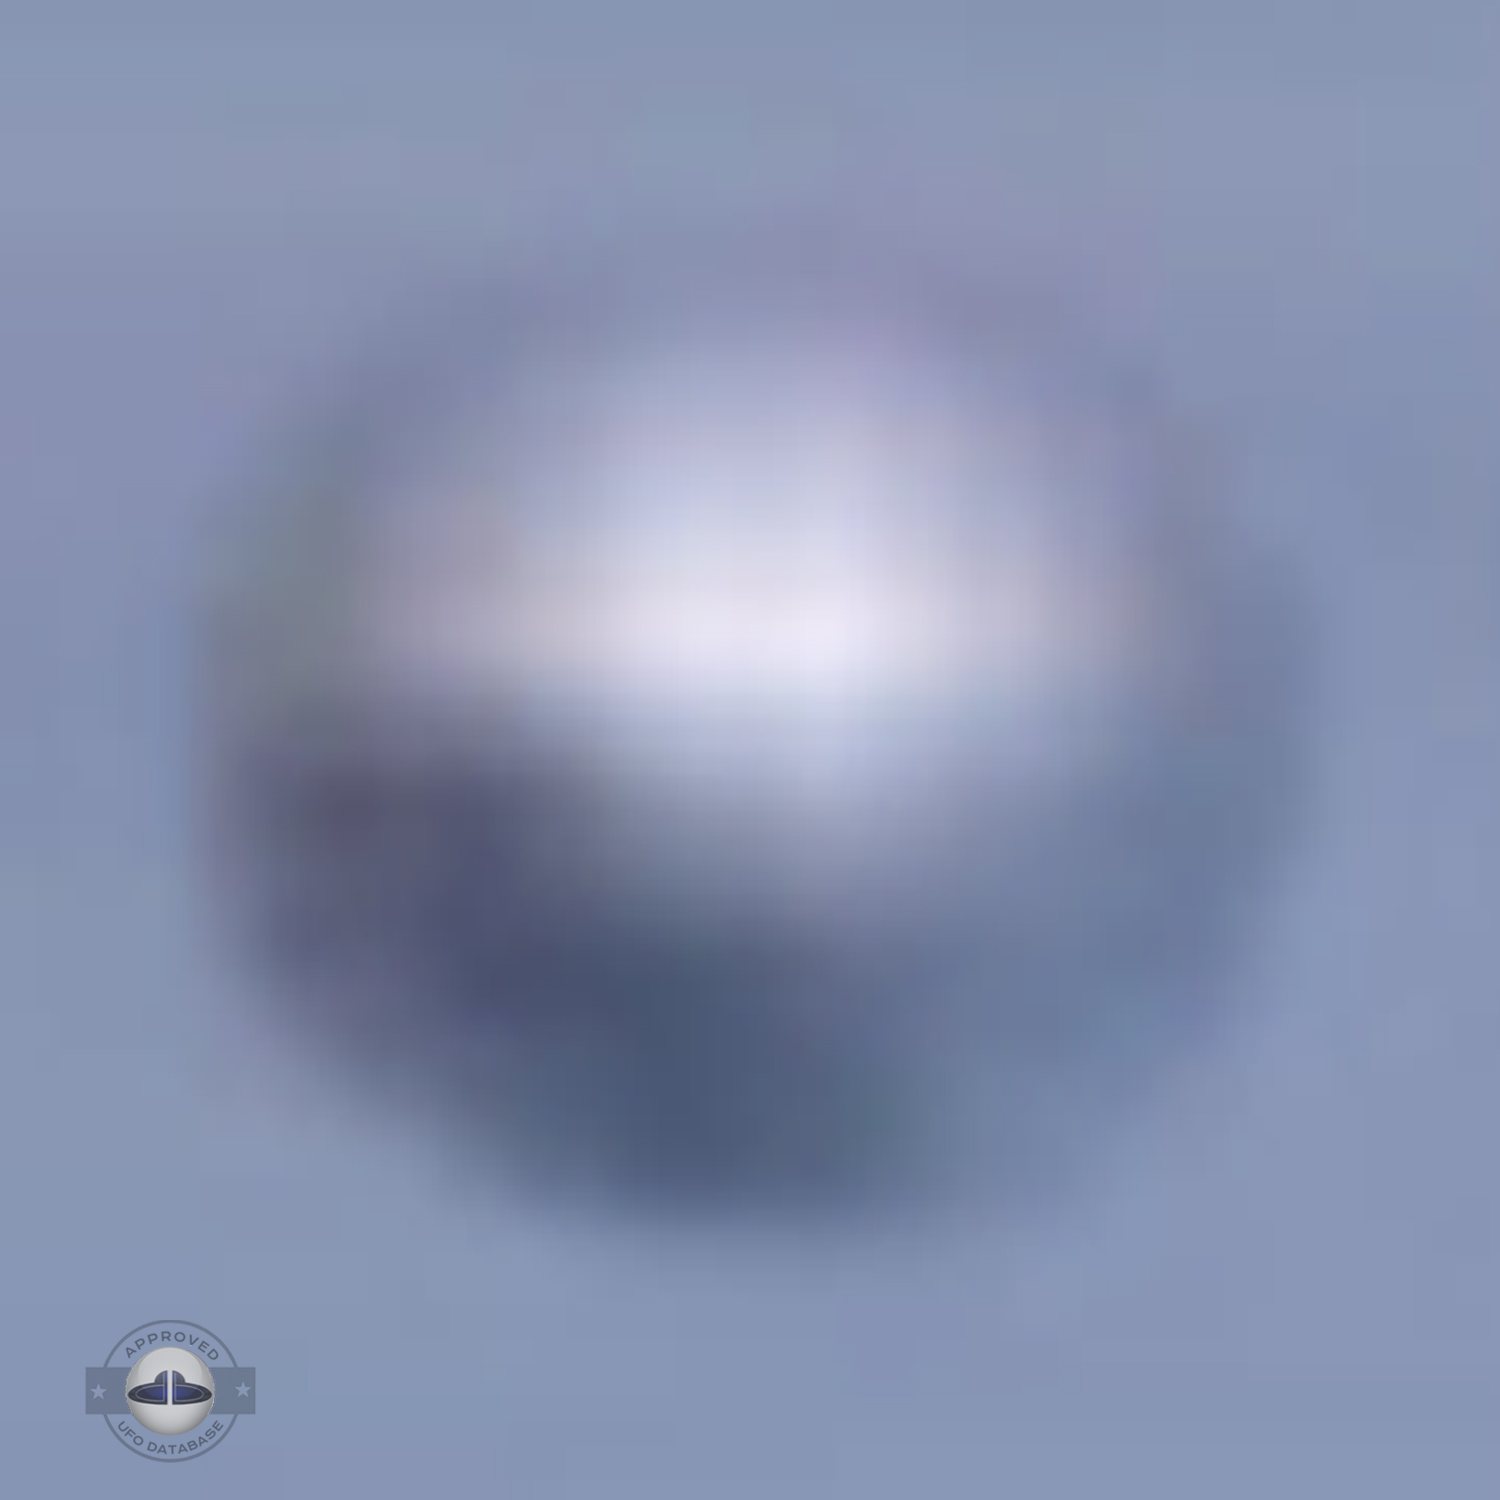 Silver metallic UFO probe in the desert of Chile | Iquique April 2010 UFO Picture #221-6